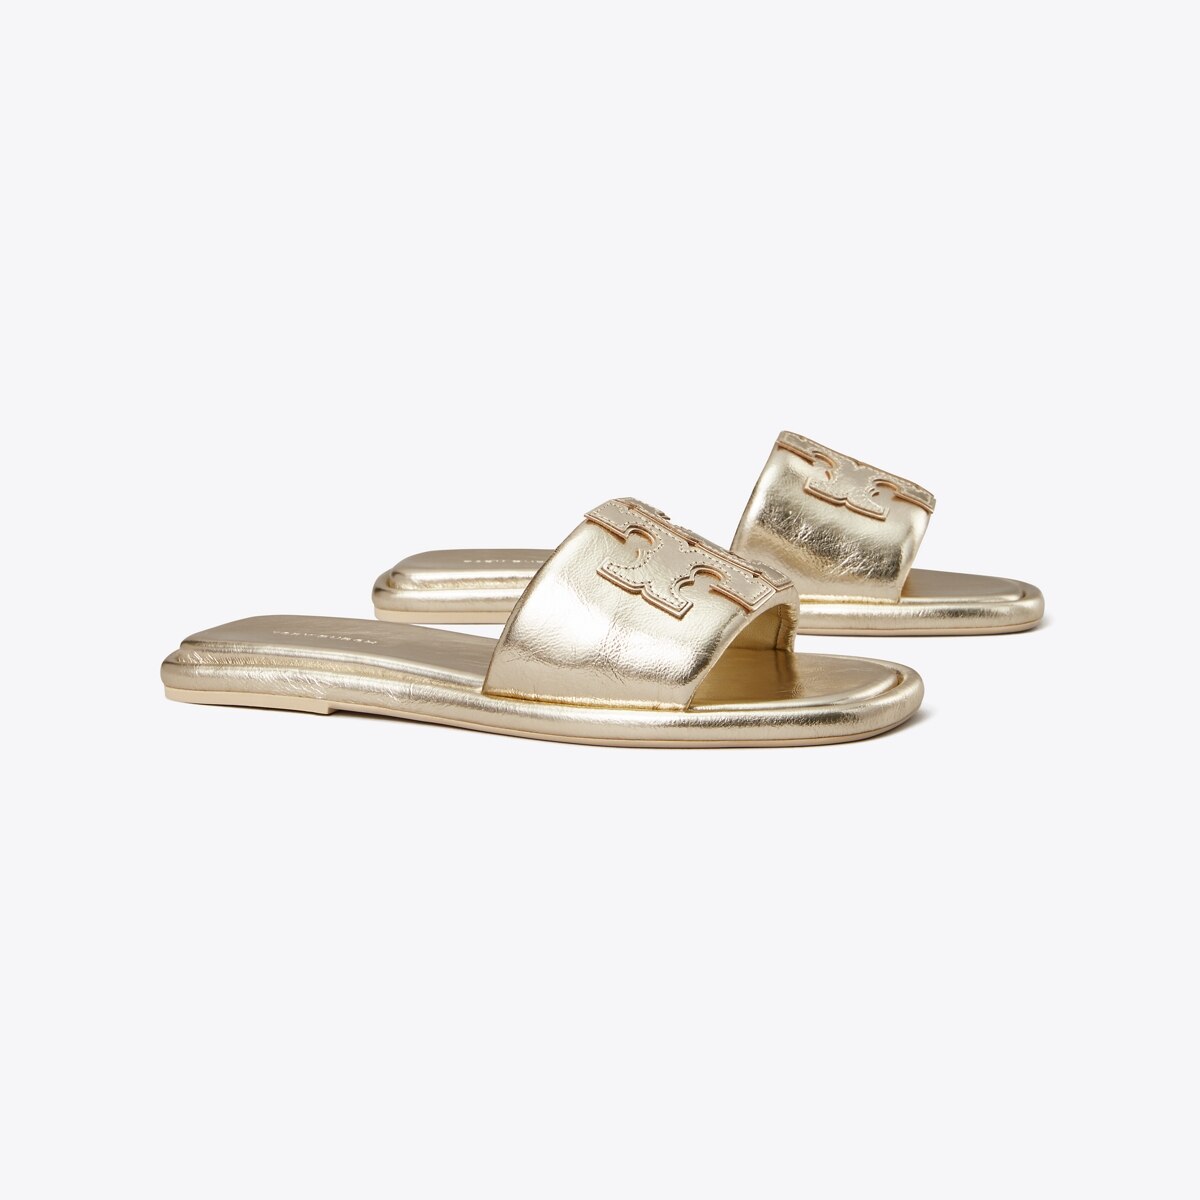 TORY BURCH, Gold Women's Sandals